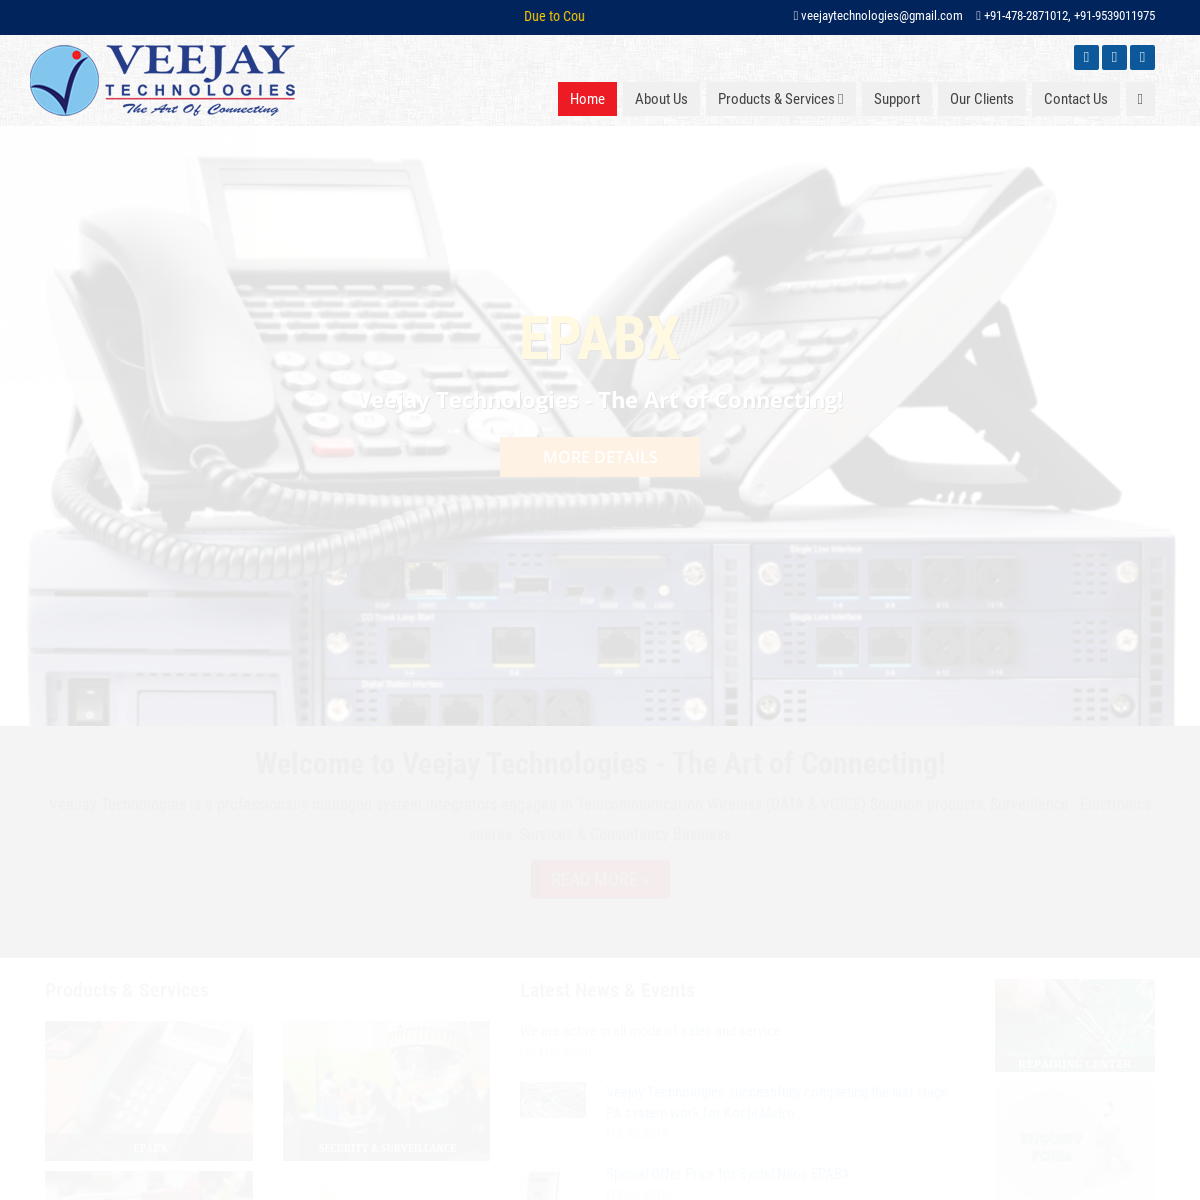 A complete backup of veejaytechnologies.com